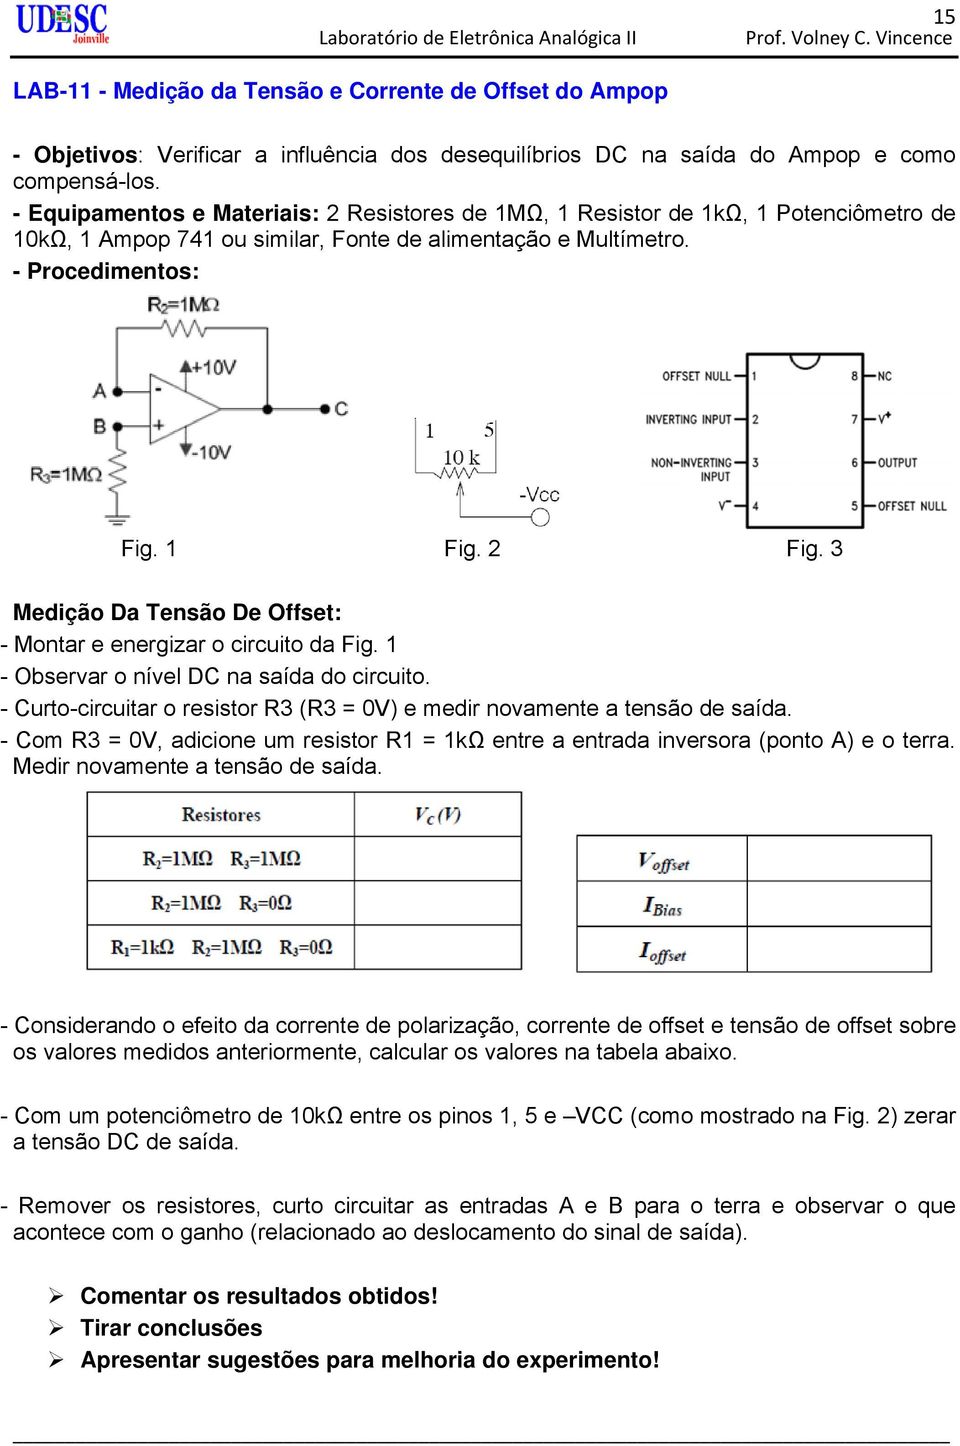 3 Medição Da Tensão De Offset: - Montar e energizar o circuito da Fig. 1 - Observar o nível DC na saída do circuito. - Curto-circuitar o resistor R3 (R3 = 0V) e medir novamente a tensão de saída.